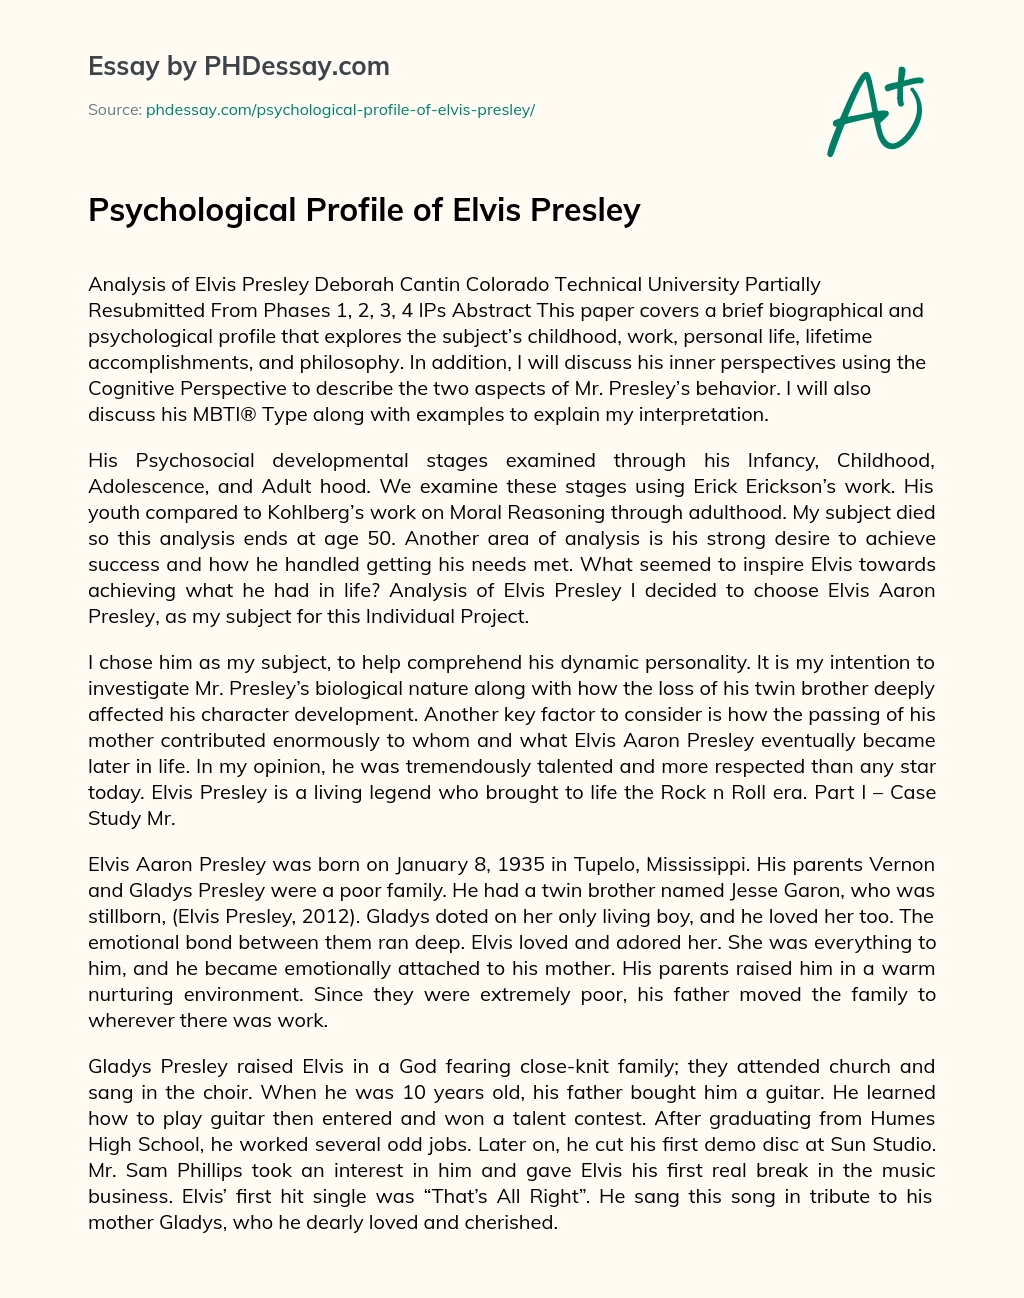 Psychological Profile of Elvis Presley essay